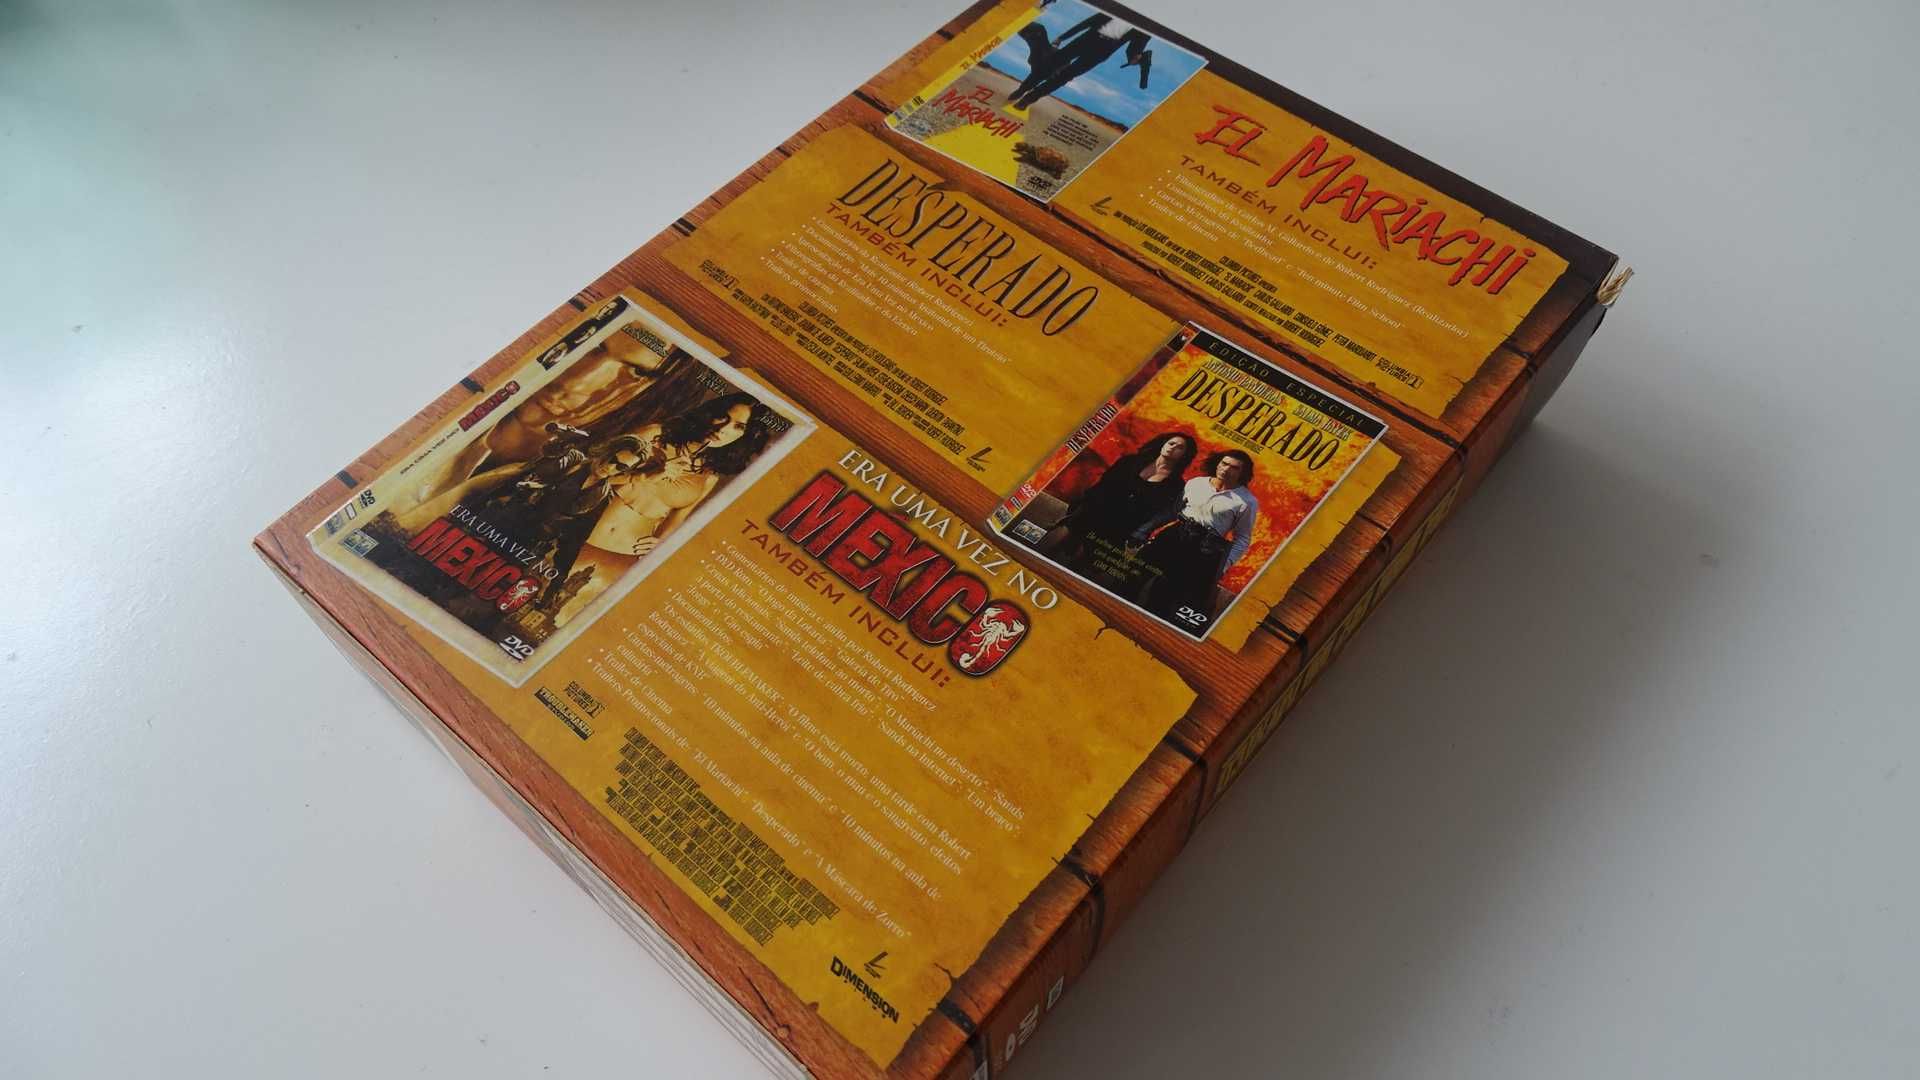 Trilogia DVD's México  . de Robert Rodriguez - Filmes Acção . c/ Novo